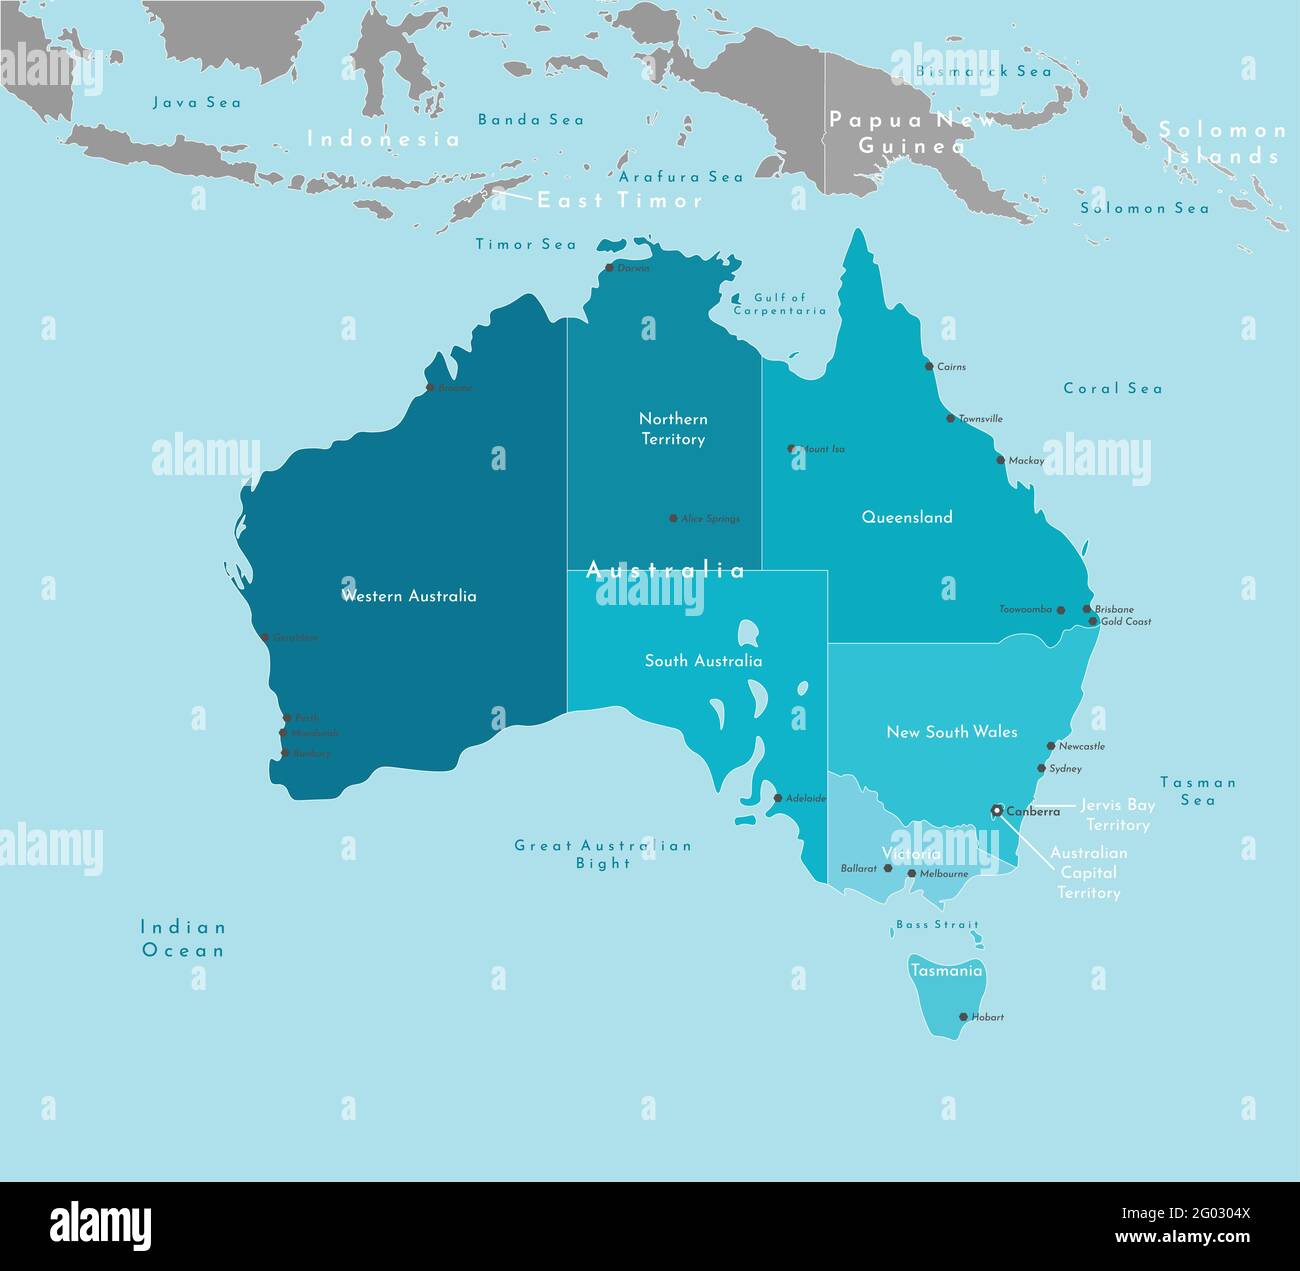 Illustration vectorielle moderne. Carte géographique simplifiée de l'Australie et des zones les plus proches (Indonésie, Papouasie-Nouvelle-Guinée, etc.). Fond bleu de l'Indi Illustration de Vecteur